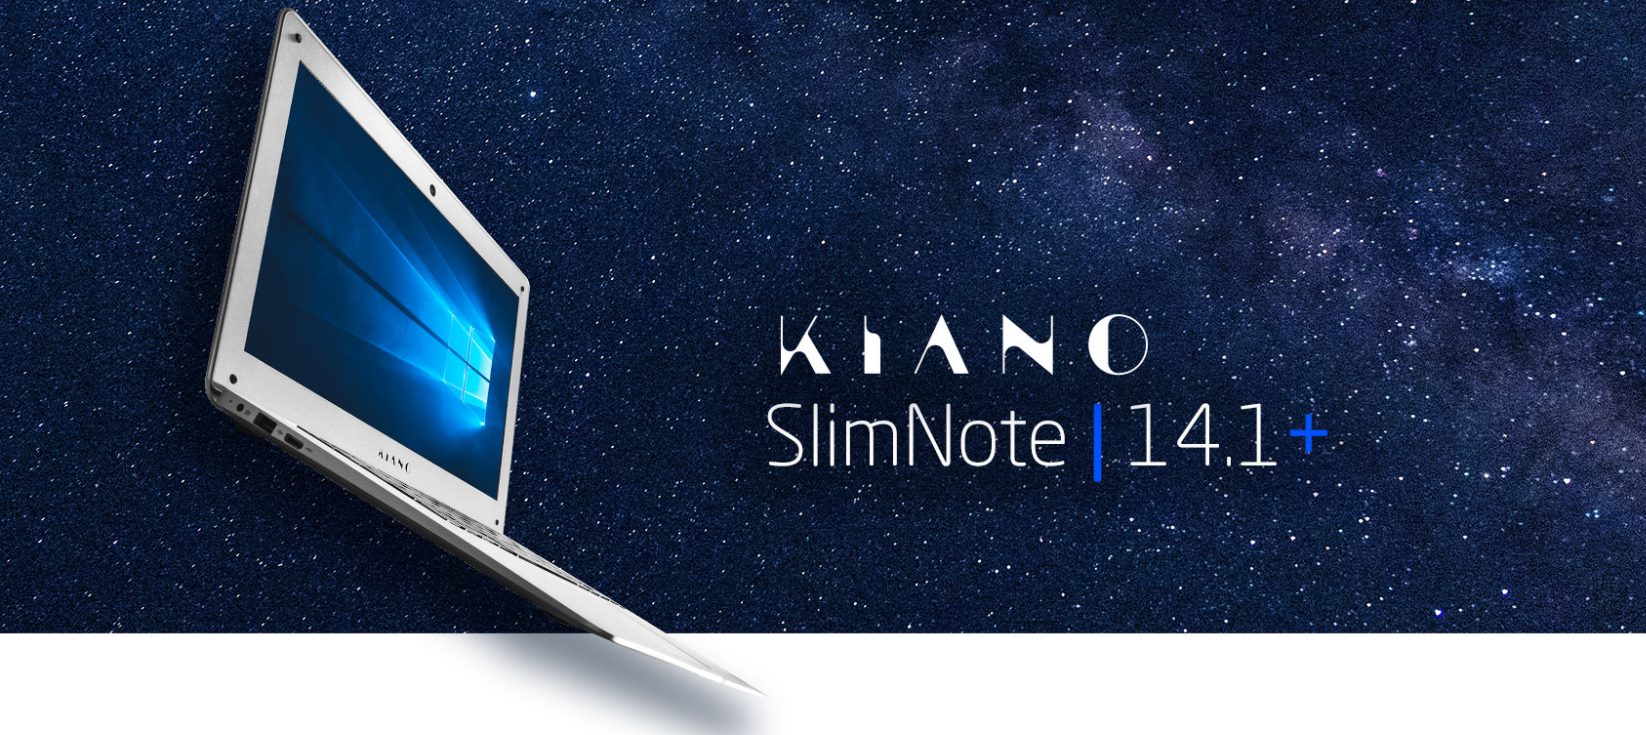 Kiano SlimNote 14.1+, czyli laptop za grosze